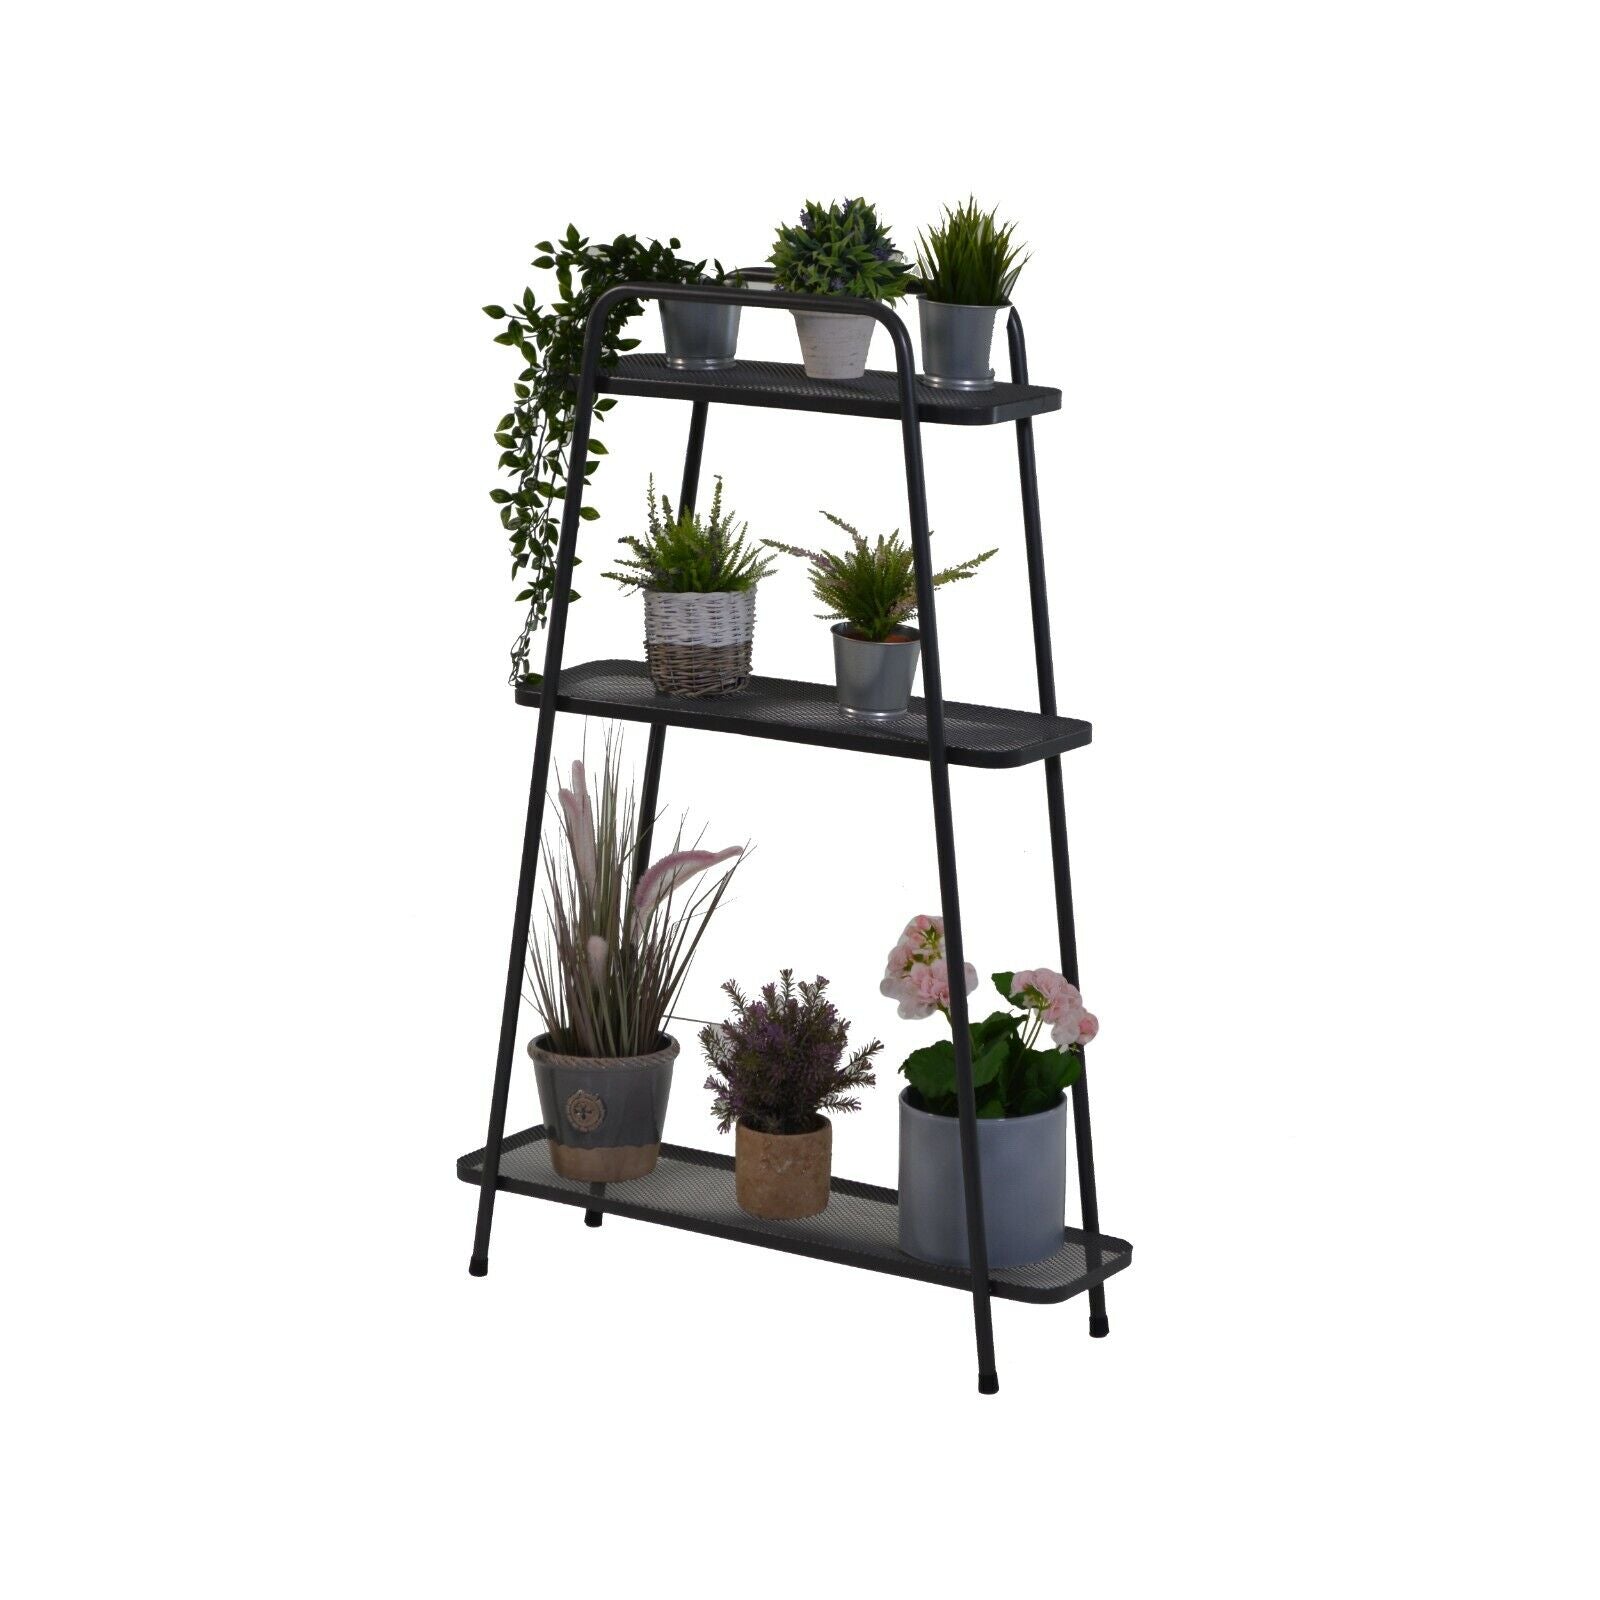 Vegtrug Modern Plant Stand with 3 shelves